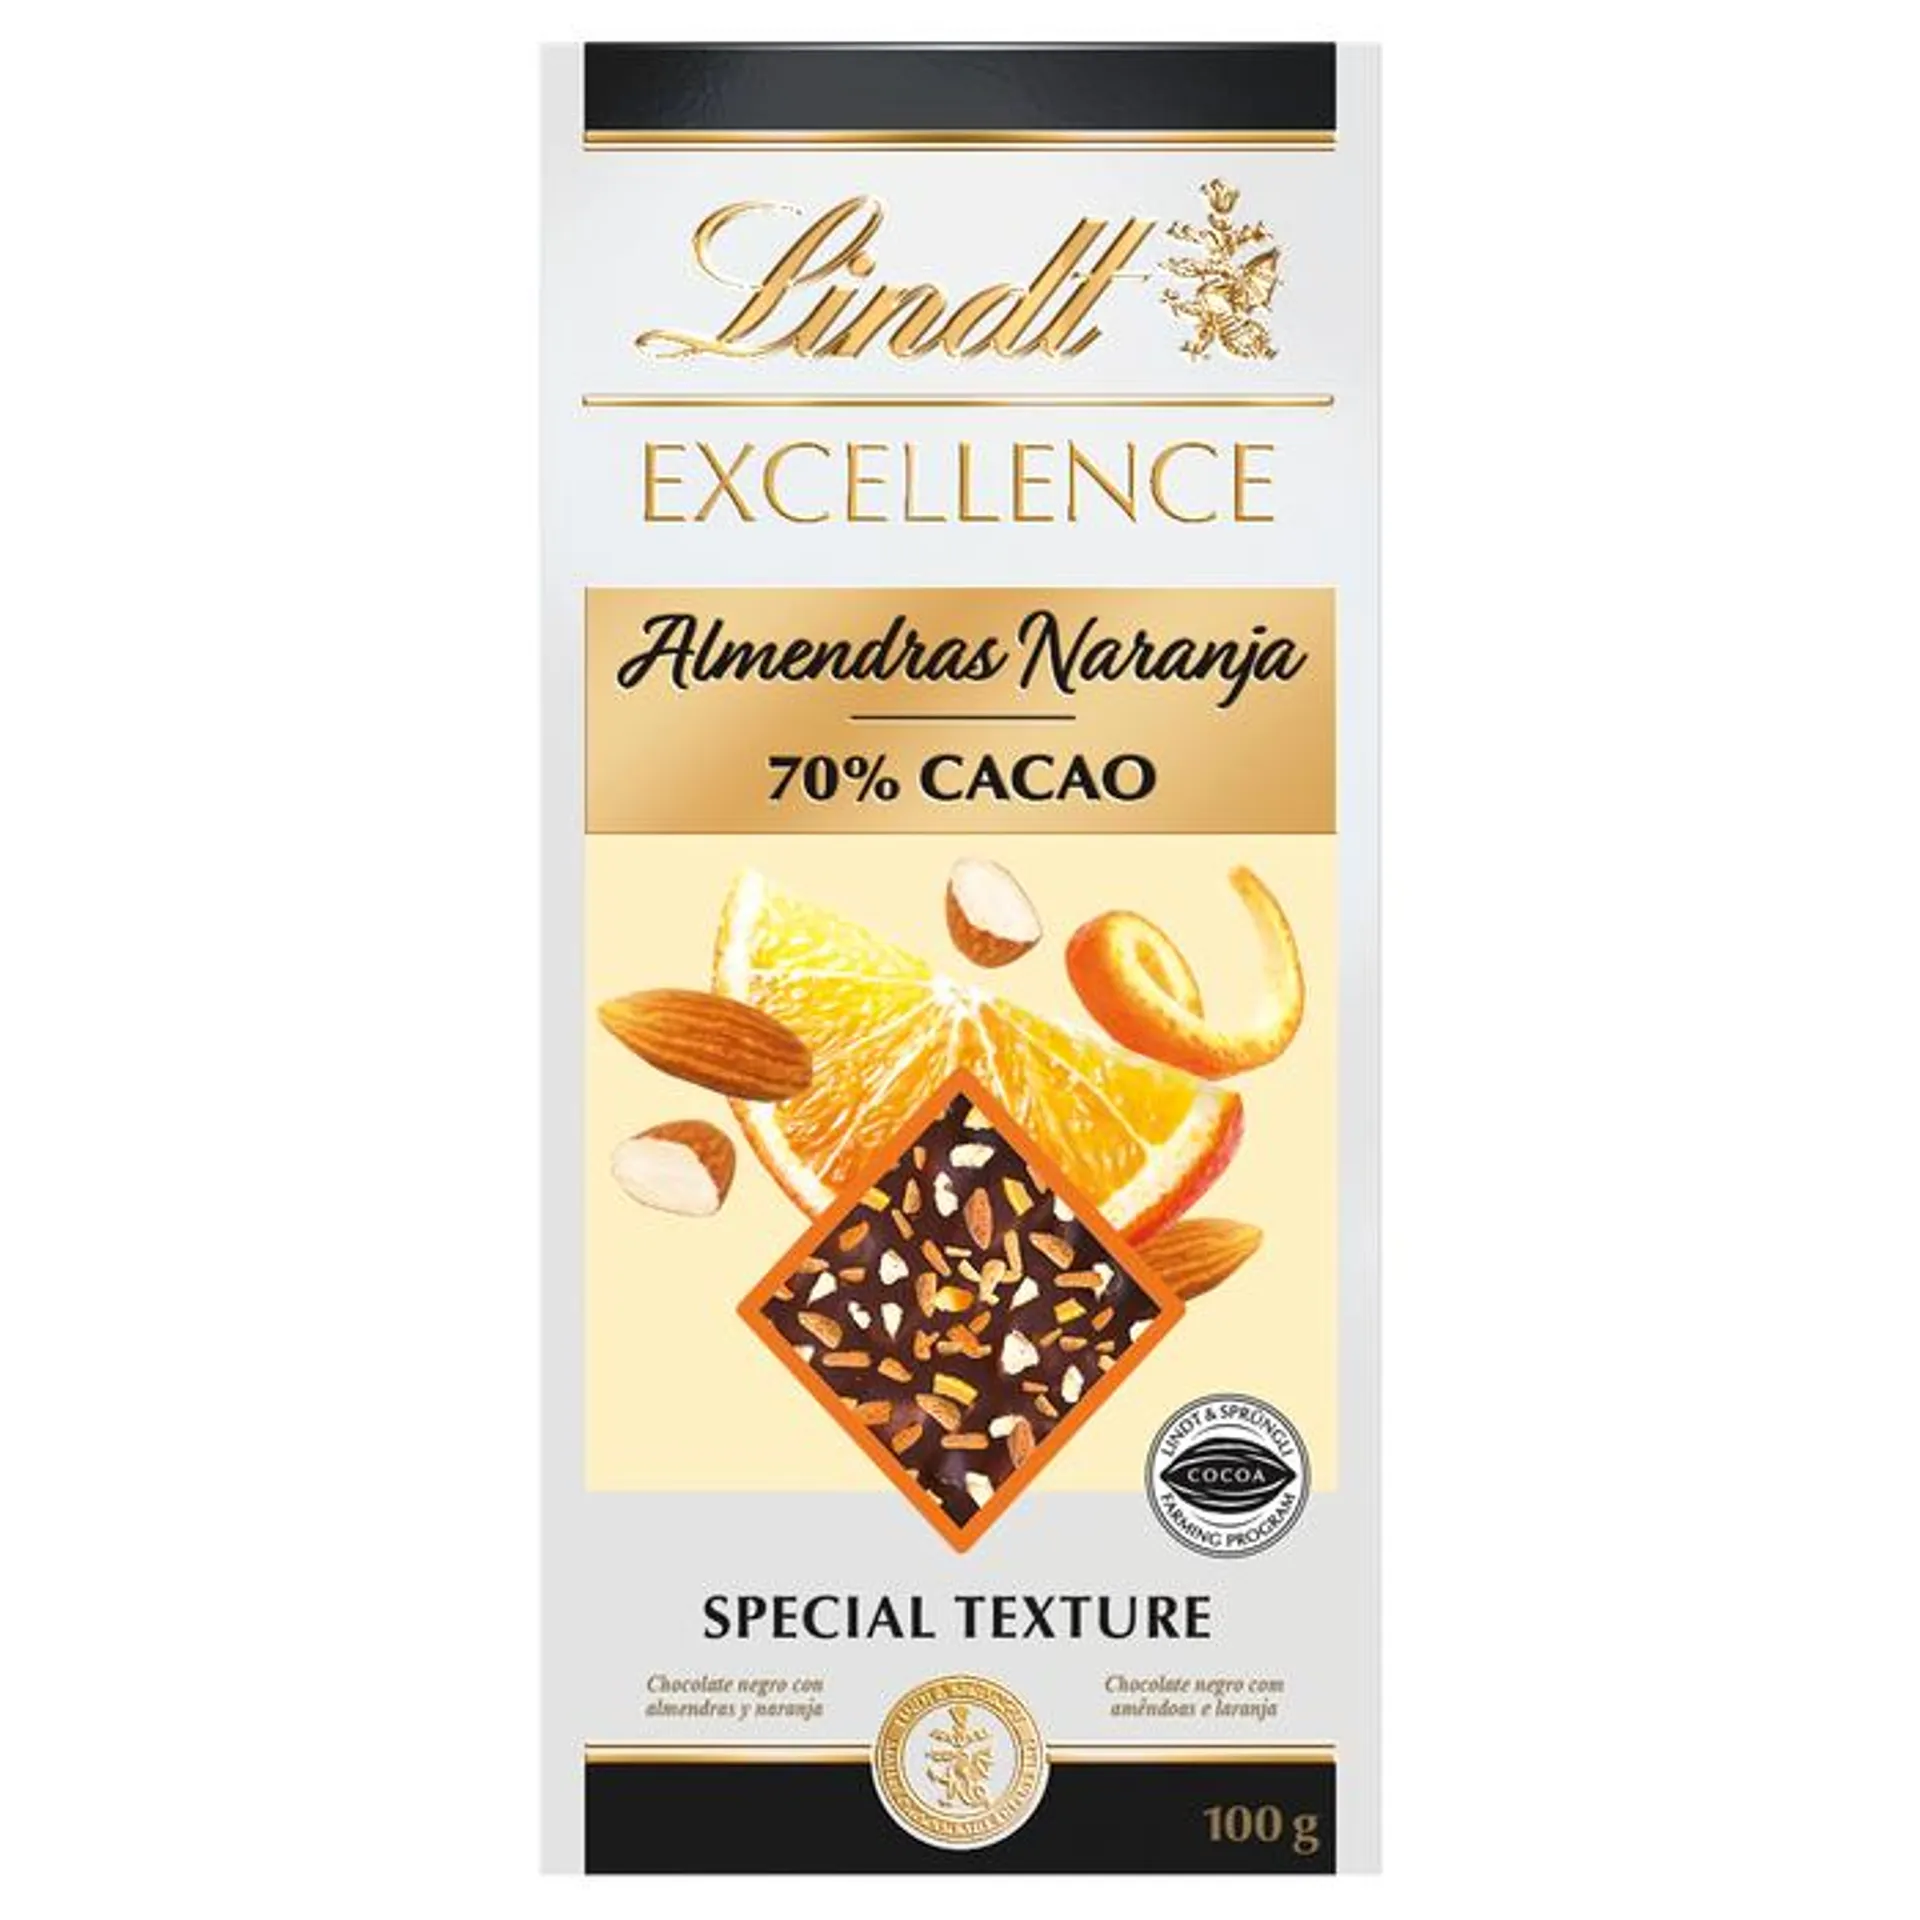 Excellence 70% Cacao con Naranja y Almendras 100g - Lindt